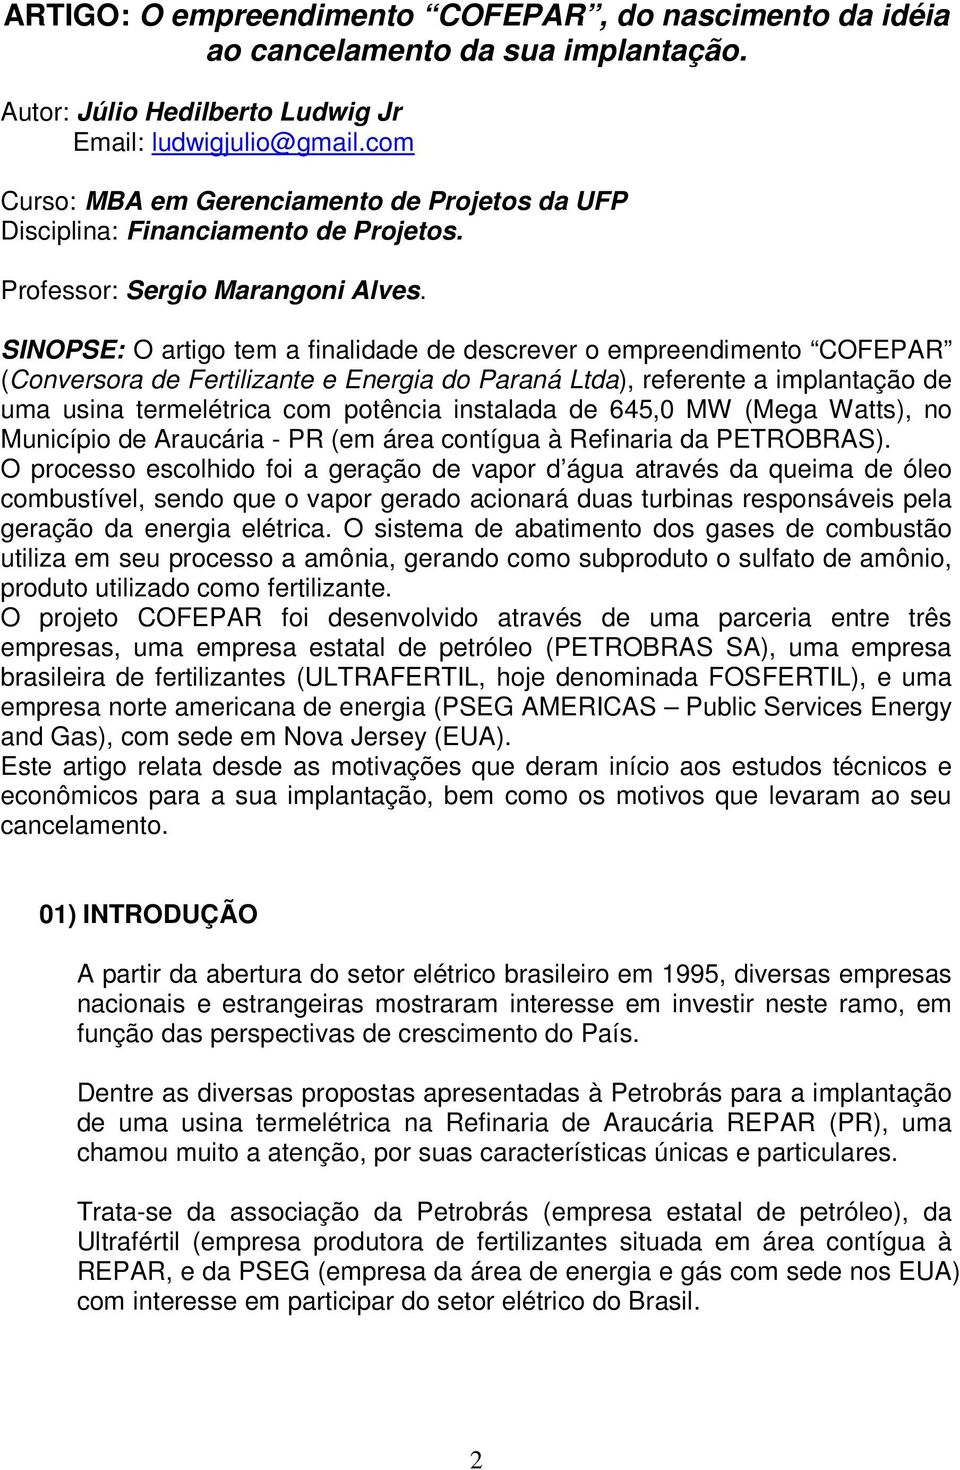 SINOPSE: O artigo tem a finalidade de descrever o empreendimento COFEPAR (Conversora de Fertilizante e Energia do Paraná Ltda), referente a implantação de uma usina termelétrica com potência